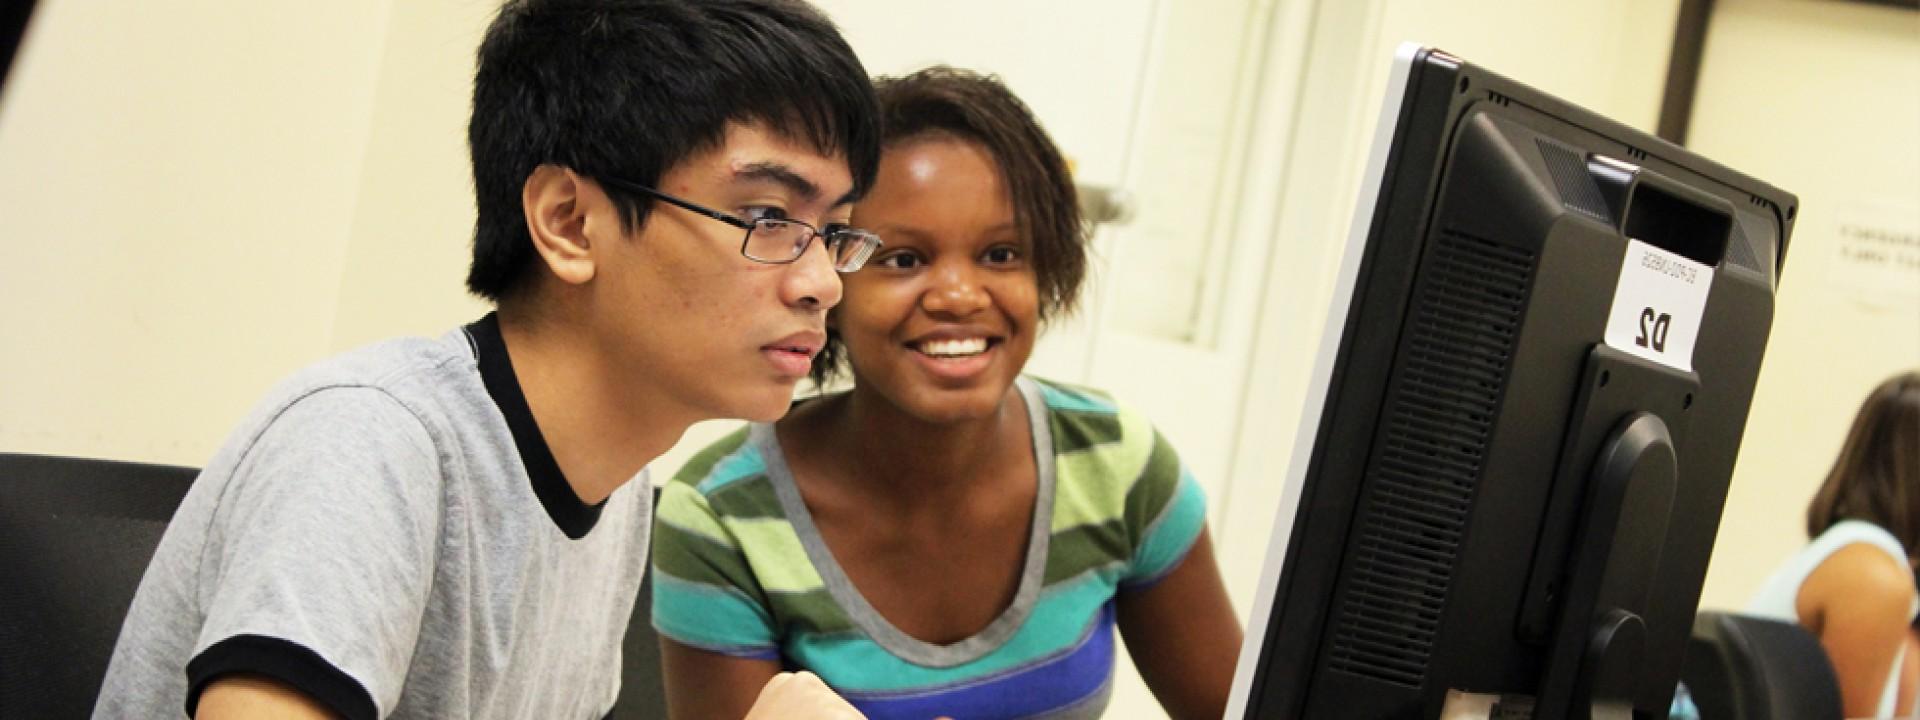 两个荣誉学院的学生聚精会神地面对着电脑屏幕. 